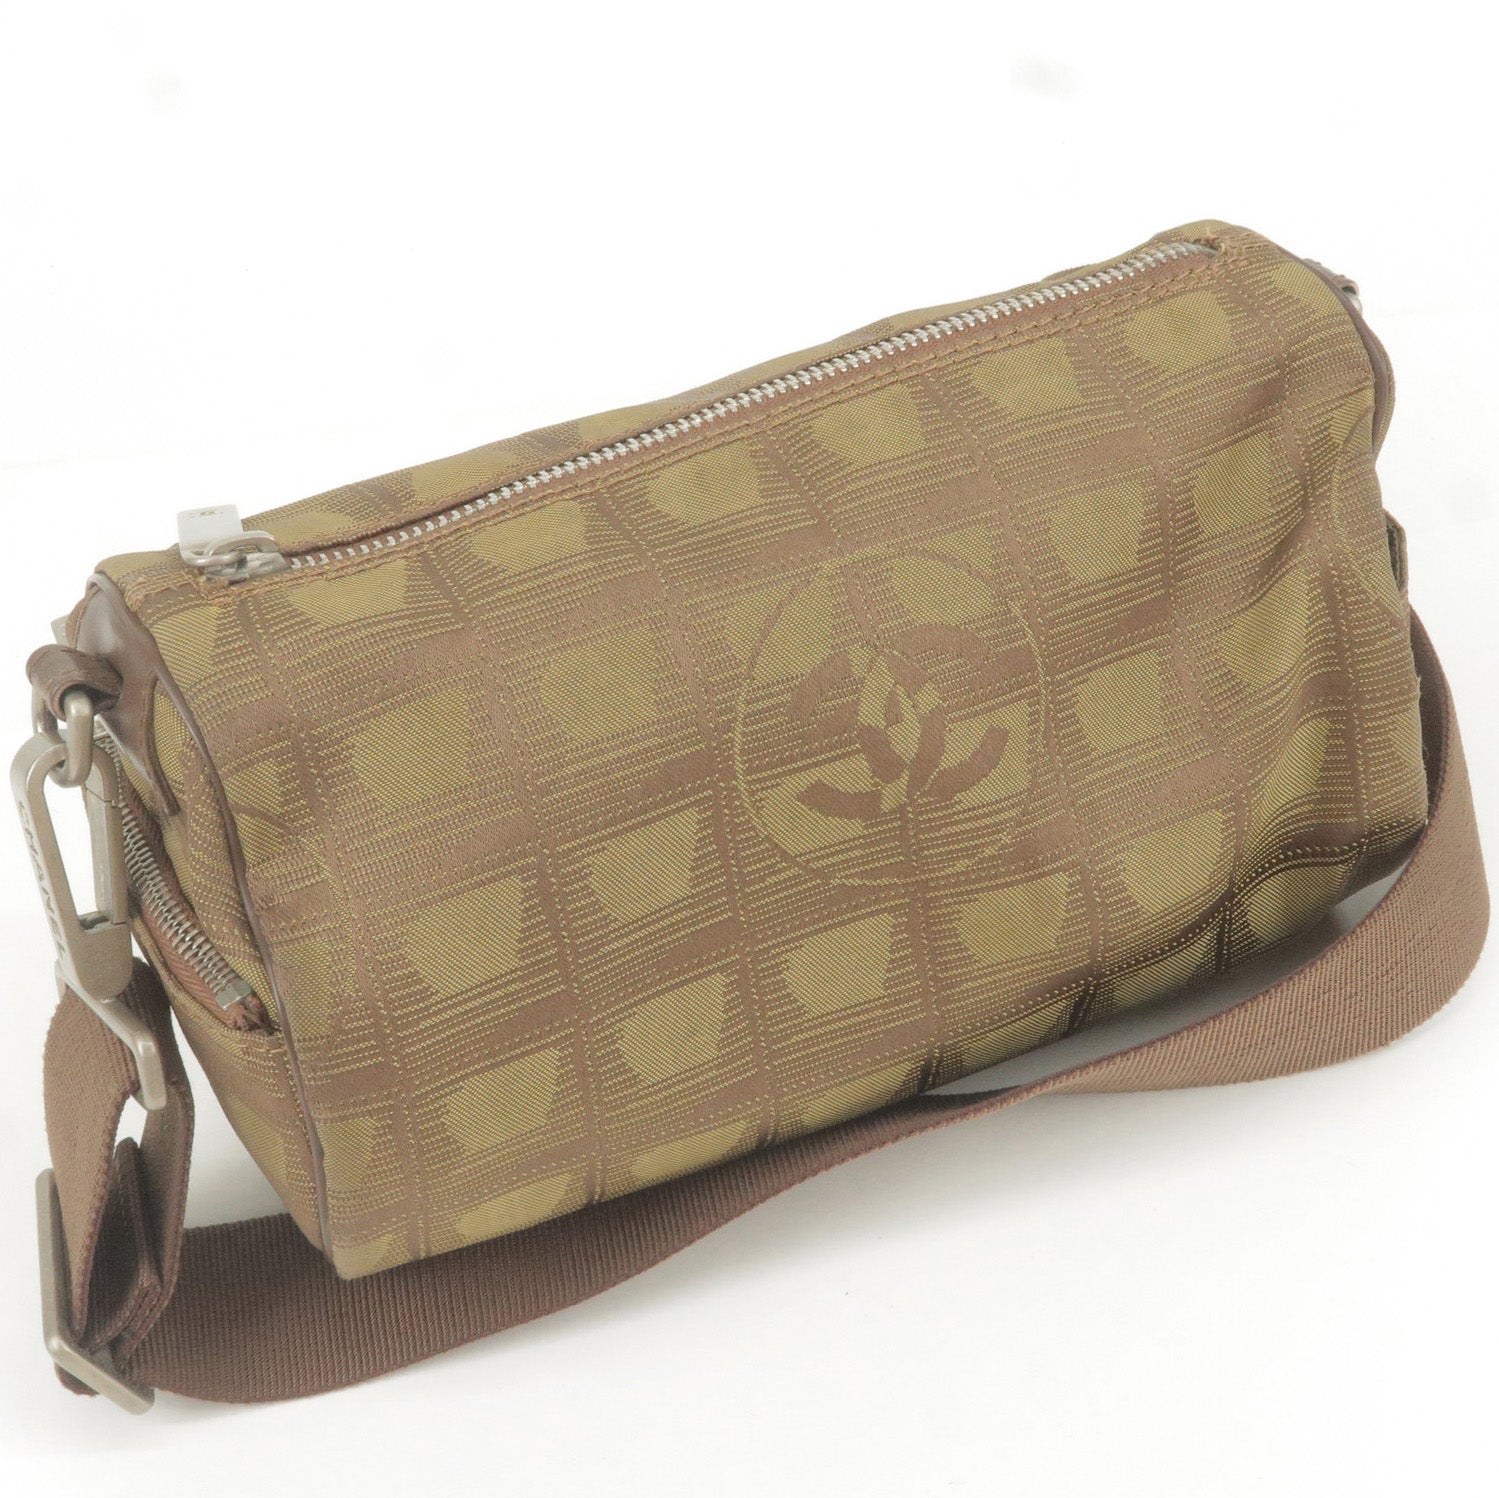 Line - Travel - Roll - Leather - Khaki – dct - Bag - Mini - Nylon